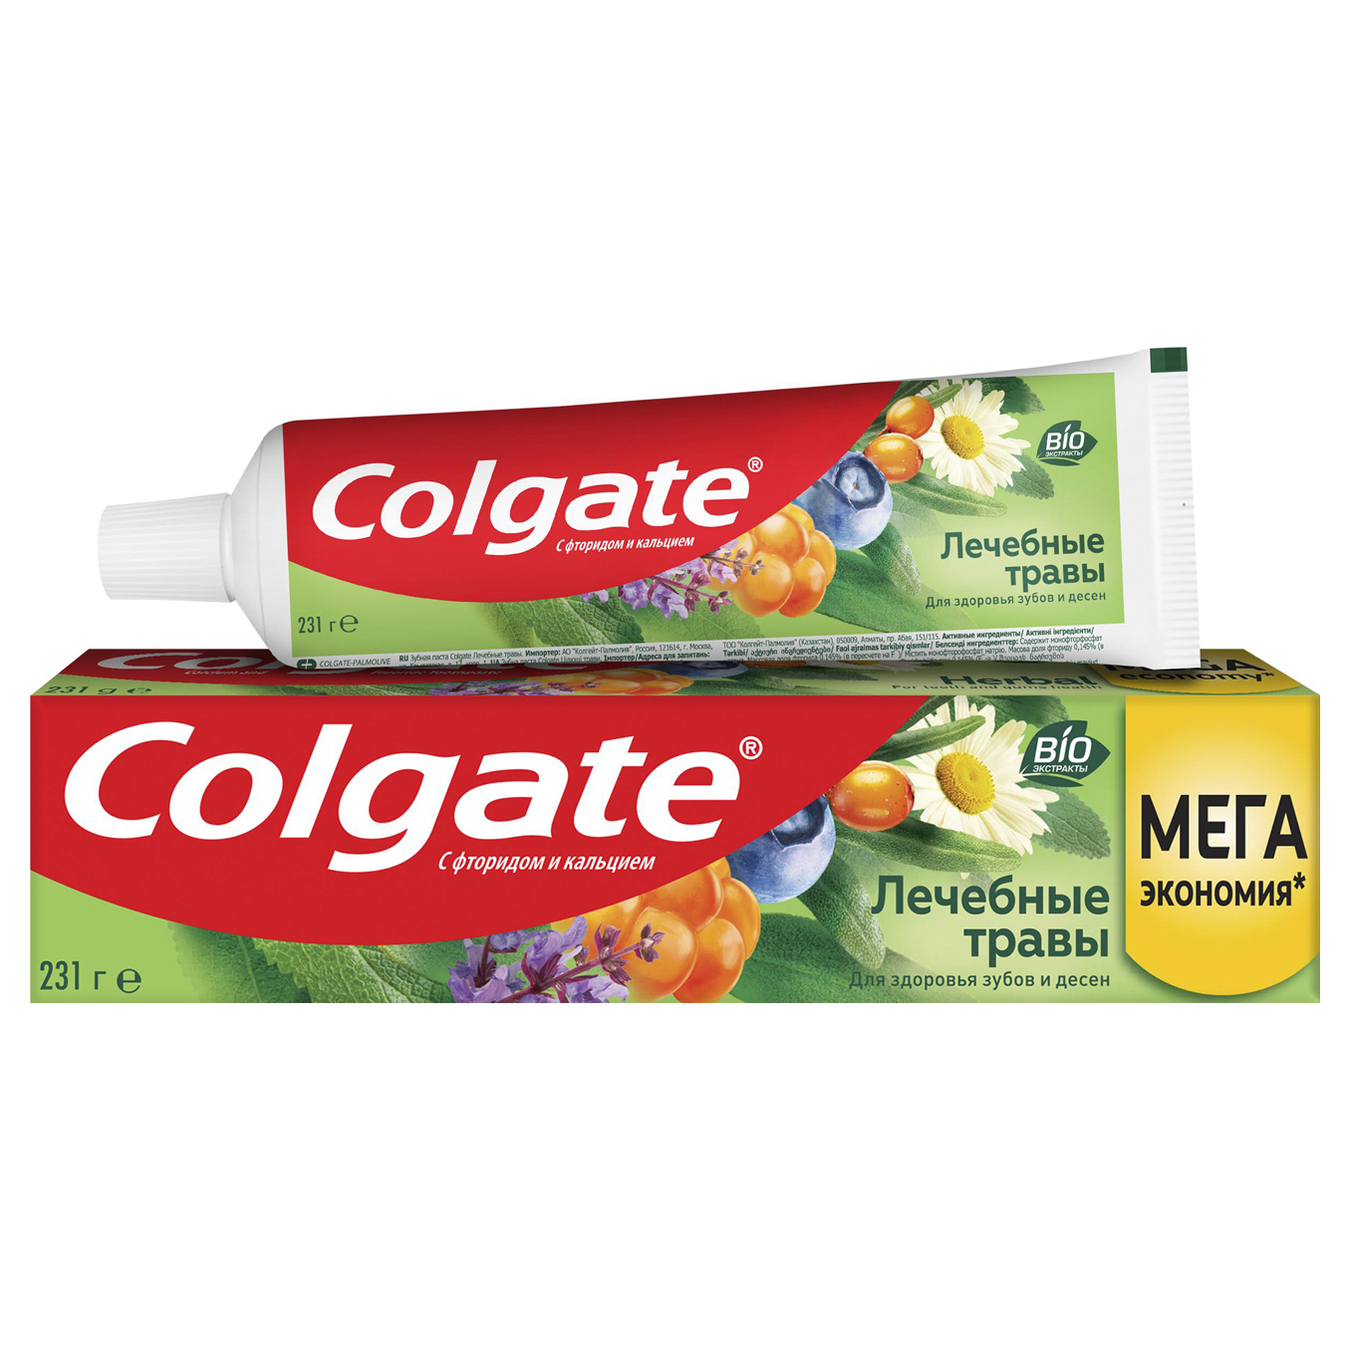 Colgate Healing Herbs Toothpaste 150ml 2